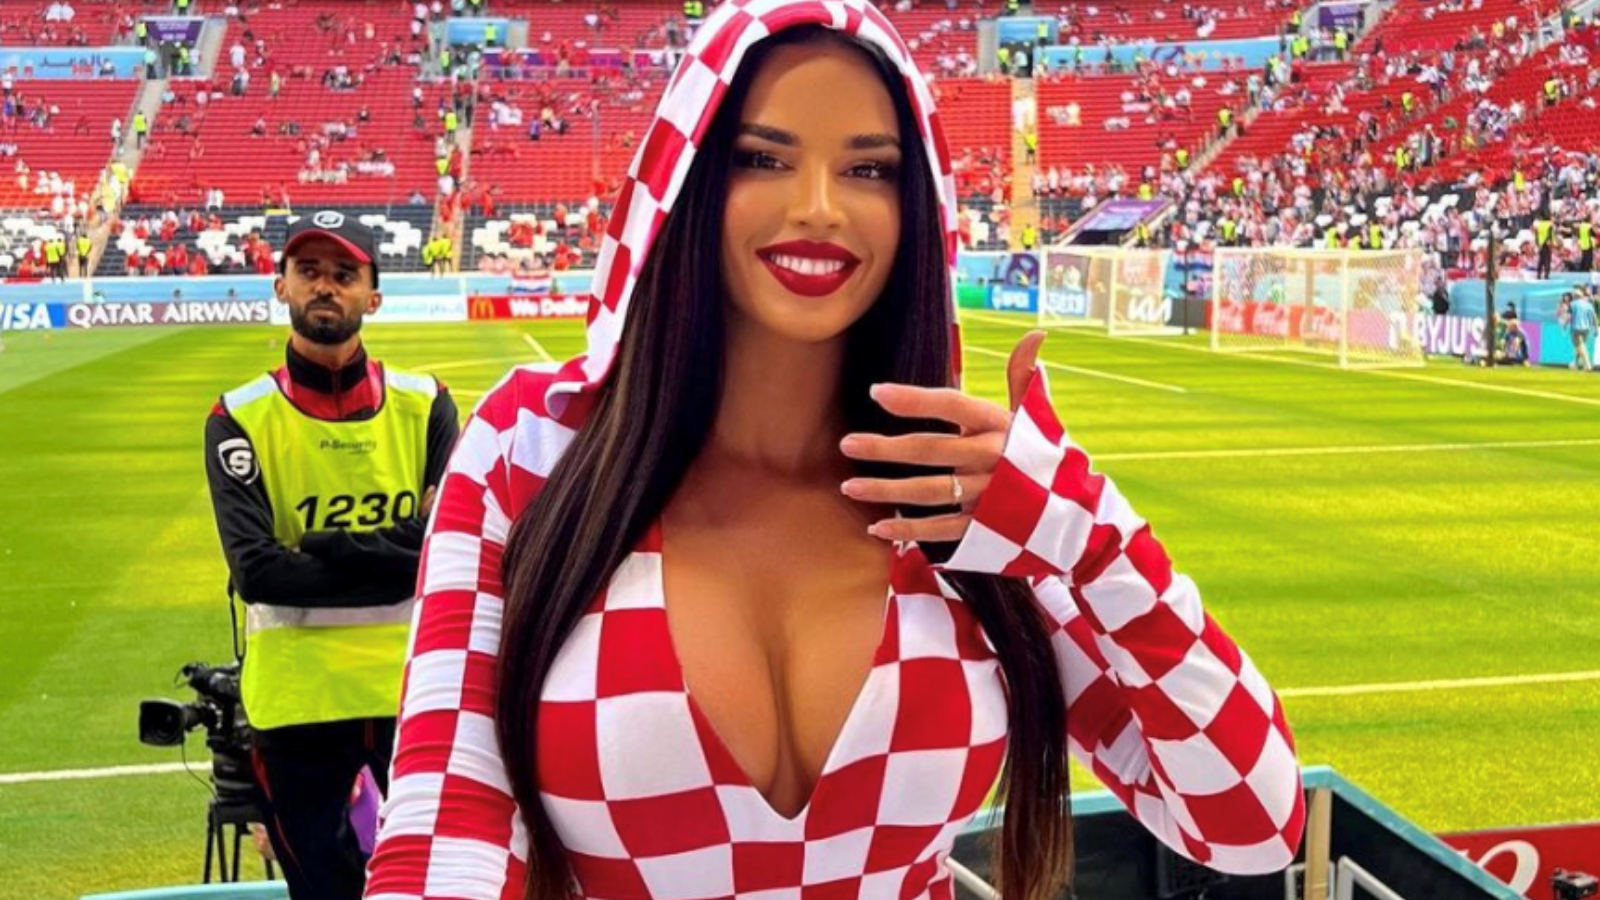 Quién Knoll, la eplosiva hincha que anima a la selección de Croacia en el Mundial de Qatar 2022? | Goal.com Espana